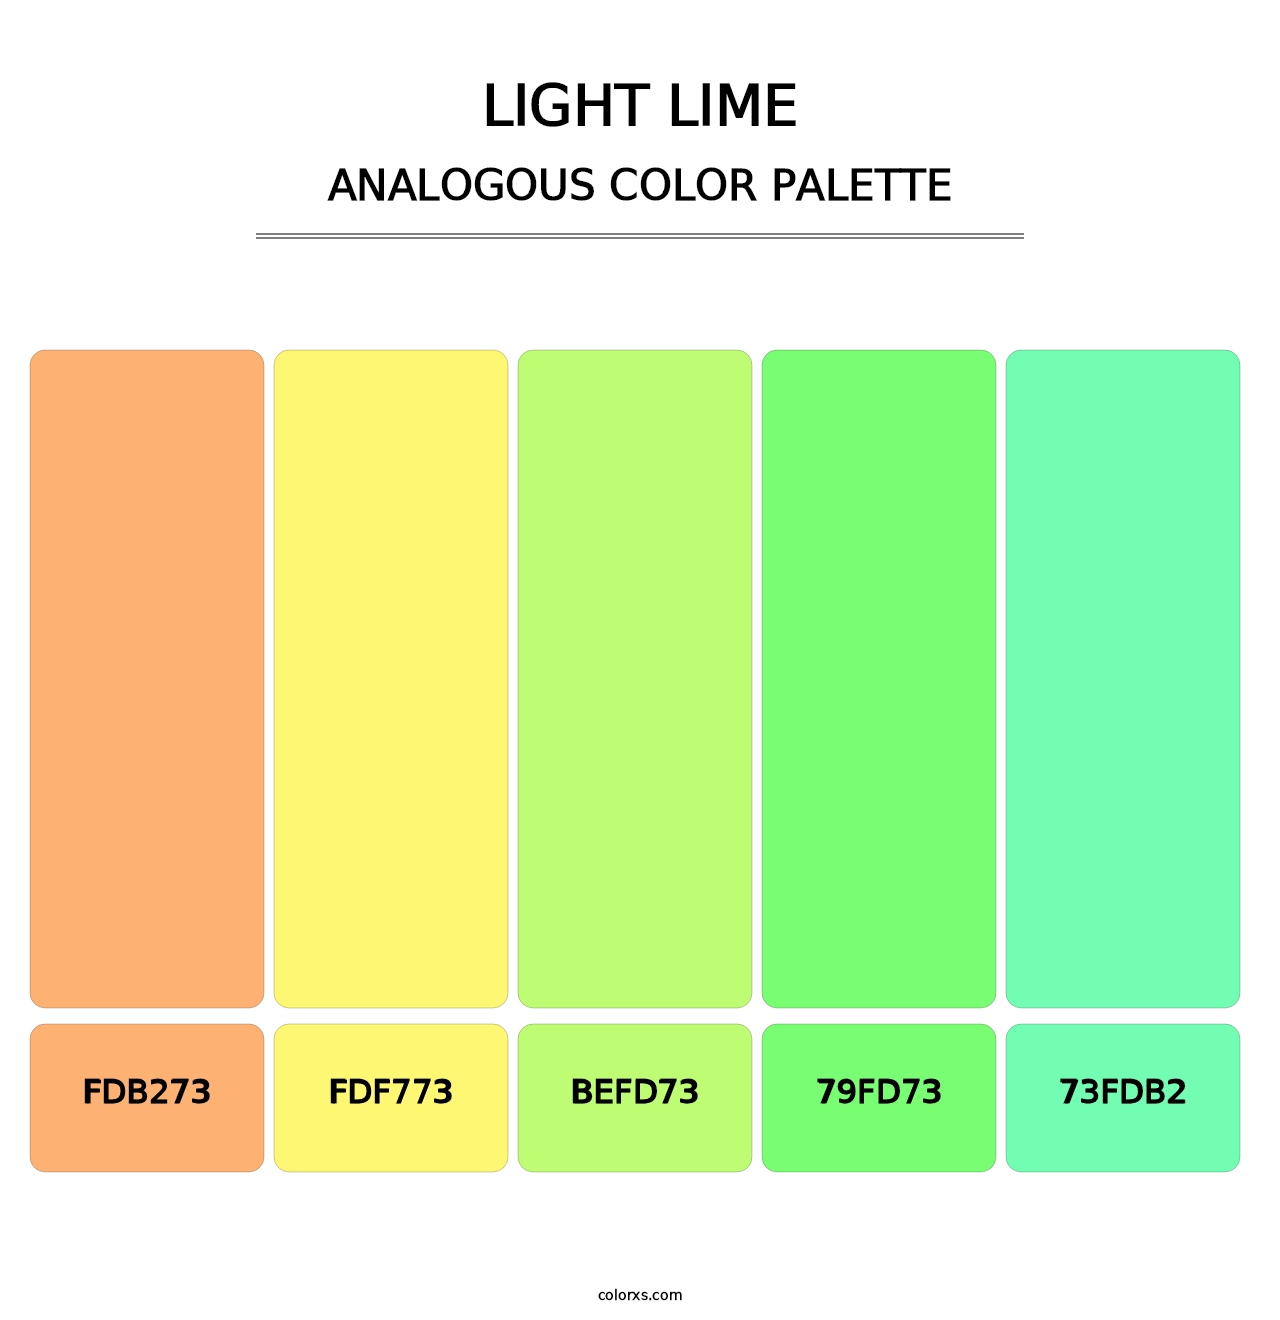 Light Lime - Analogous Color Palette